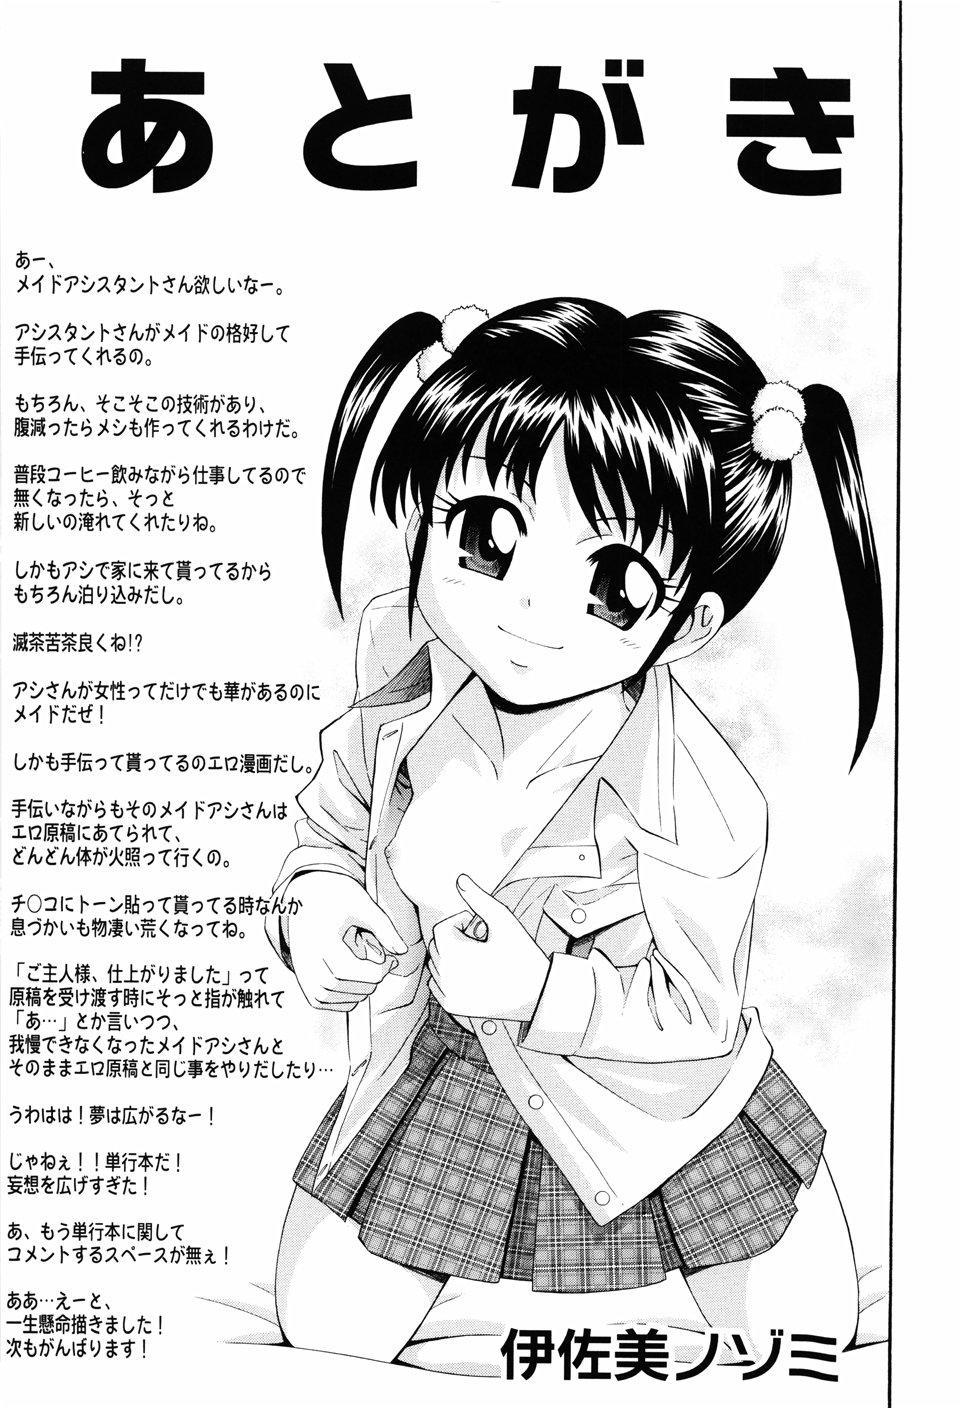 Sola Shoujo no Mune ga Fukuramu Toki Yanks Featured - Page 203